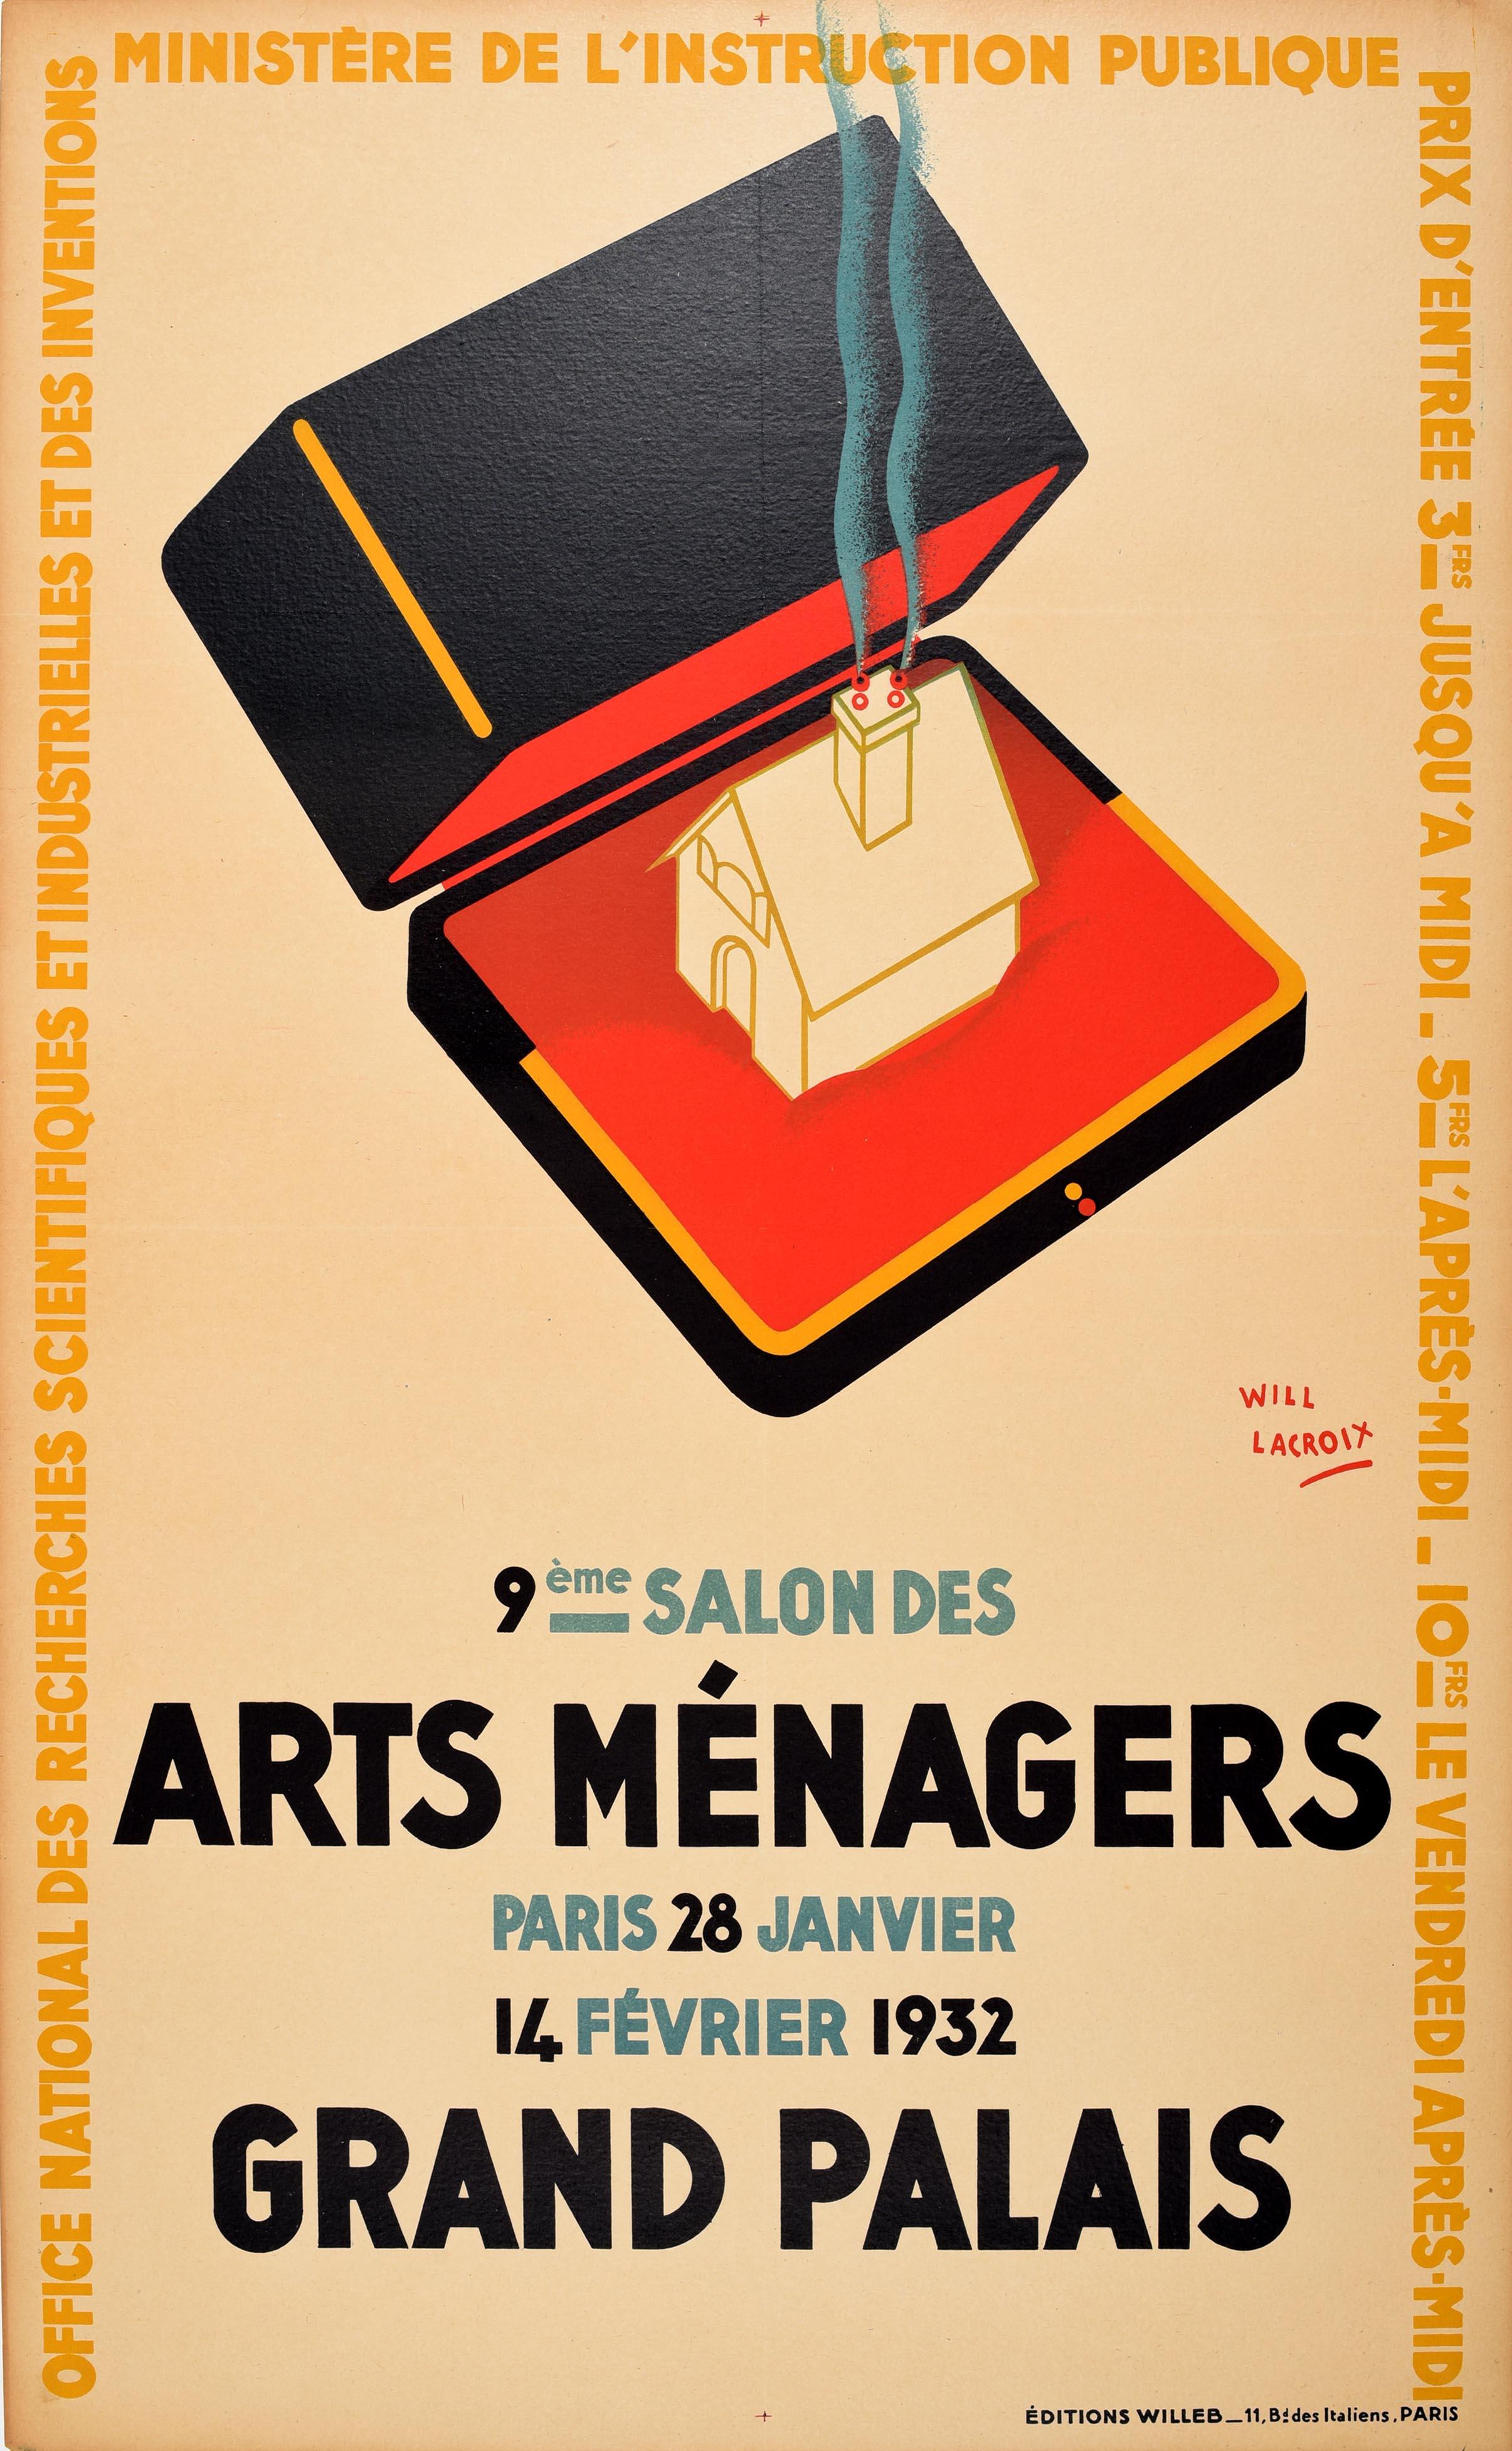 Originales Vintage-Ausstellungsplakat, das für die Arts Menagers / Household Arts Show vom 28. Januar bis 14. Februar 1932 im Grand Palais Paris wirbt. Es zeigt ein großartiges Art-Déco-Motiv eines Hauses in einem offenen Ringkasten mit stilisierten